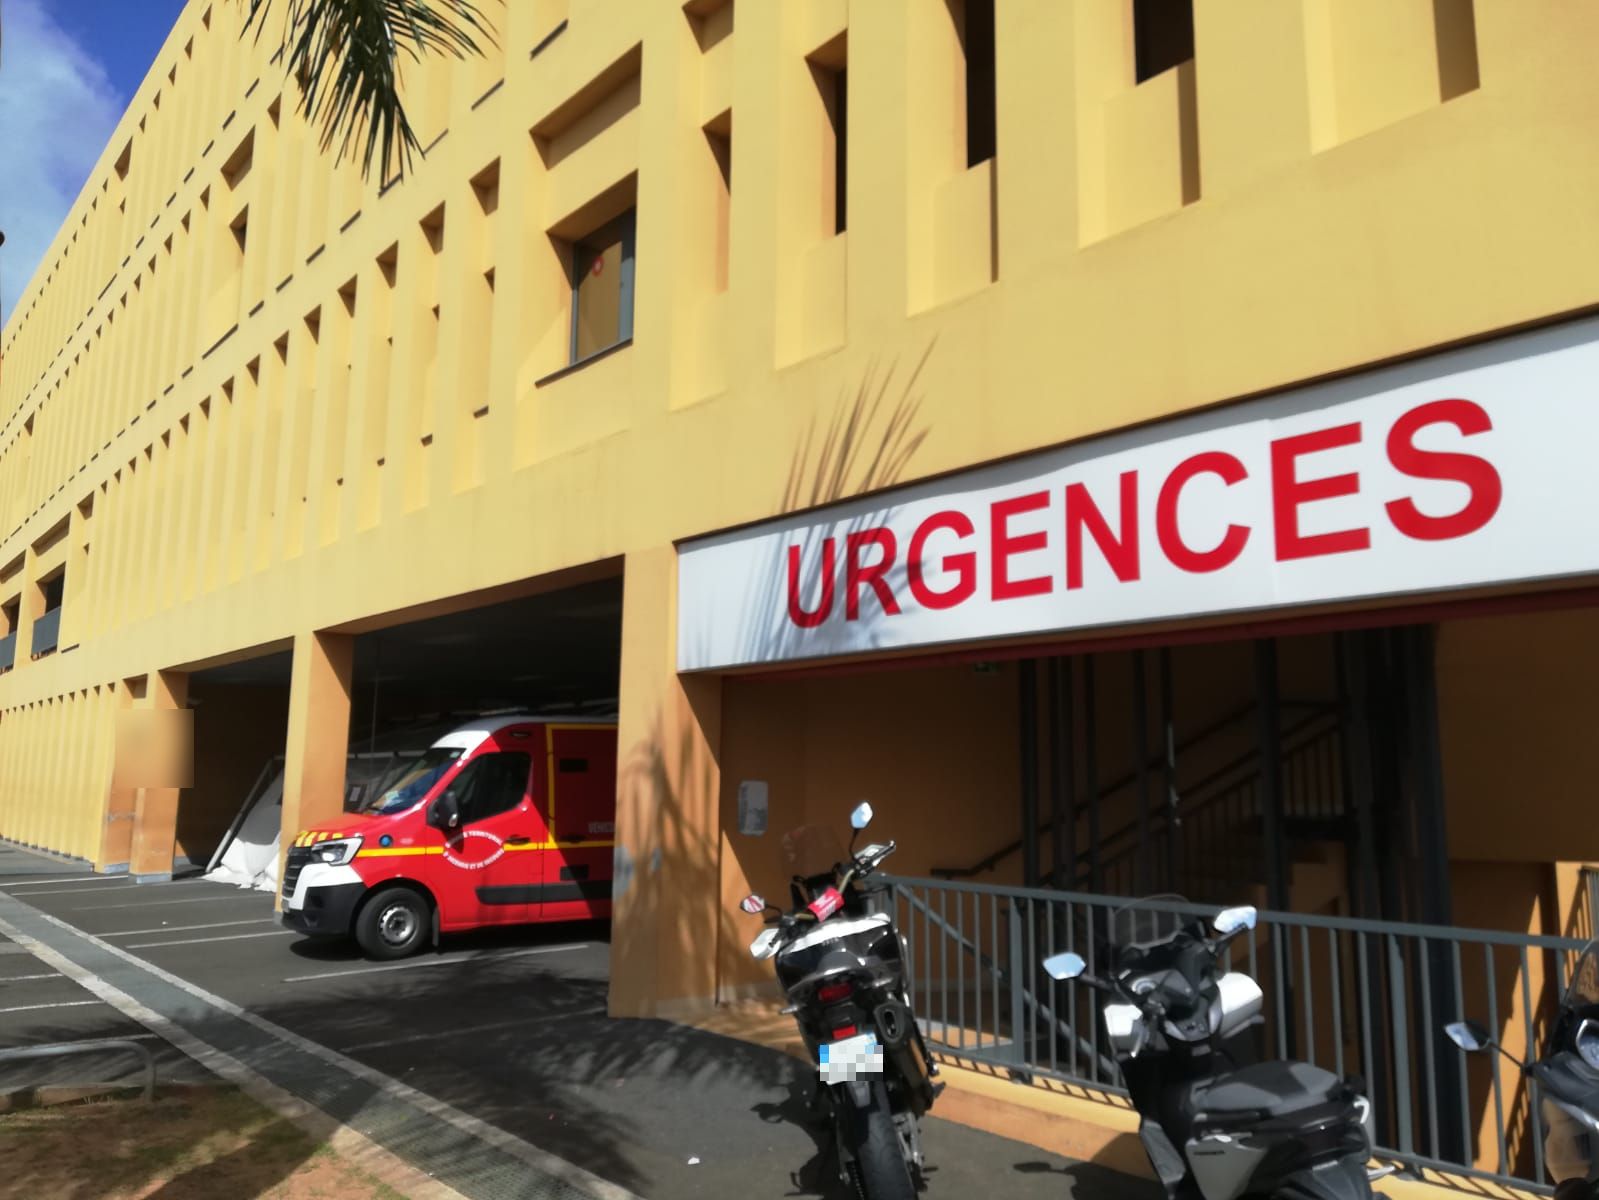     Dengue : les urgences du CHU de Martinique sont "sous tension"

